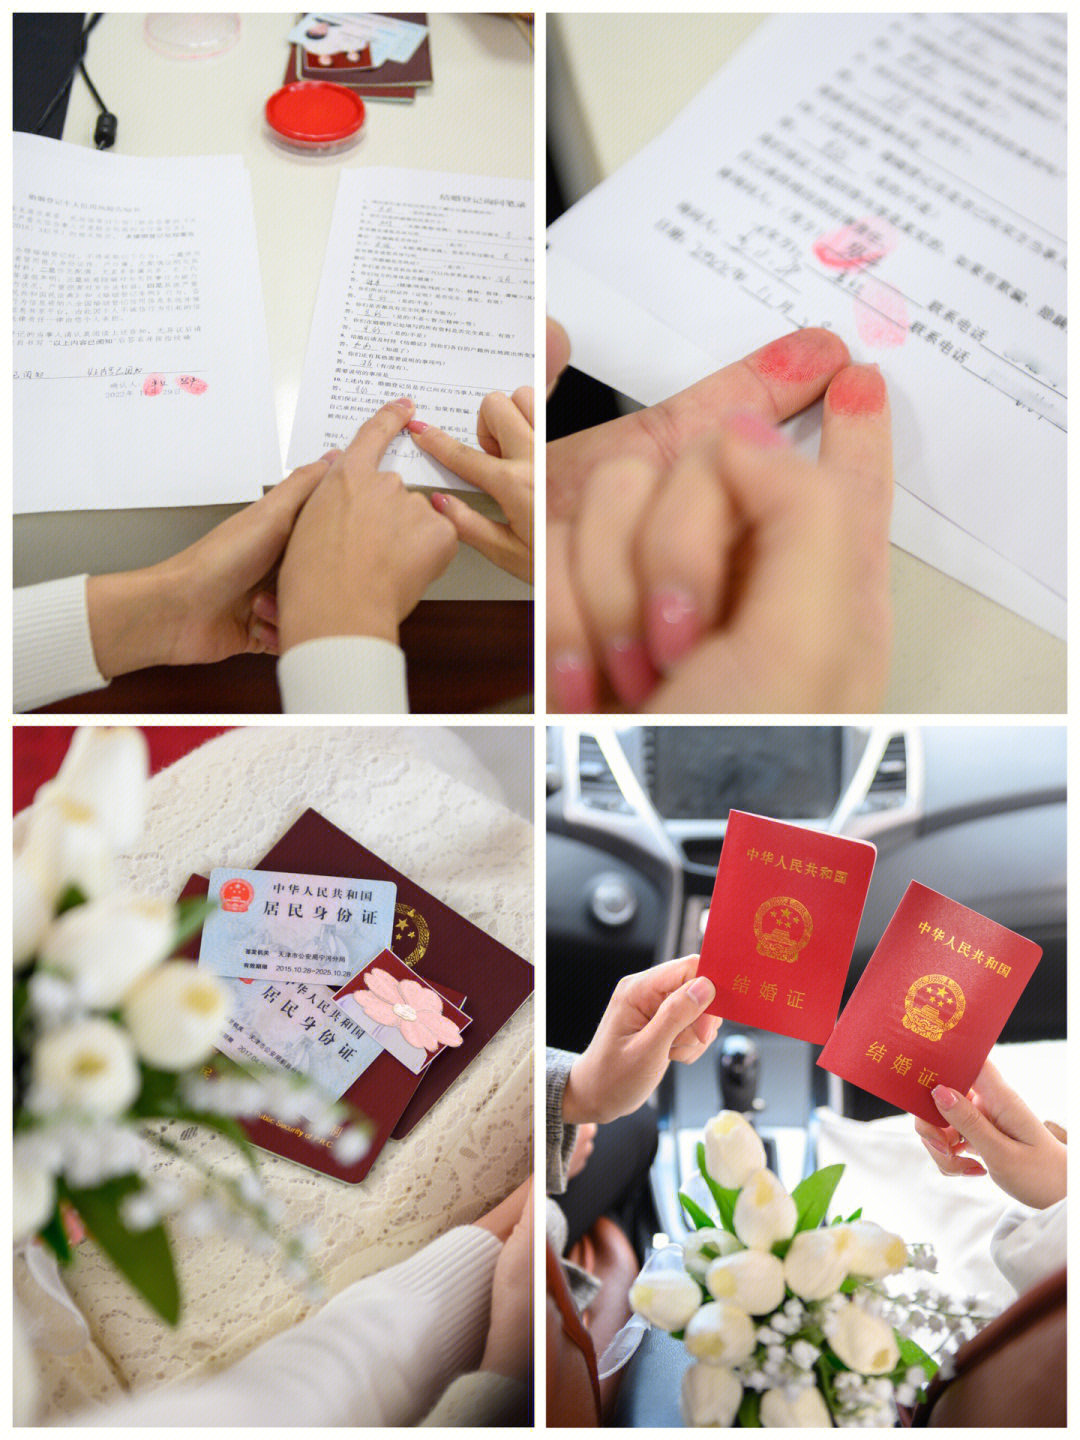 因为天津市区内民政局现在规定是不让随行人员陪同办理婚姻登记业务